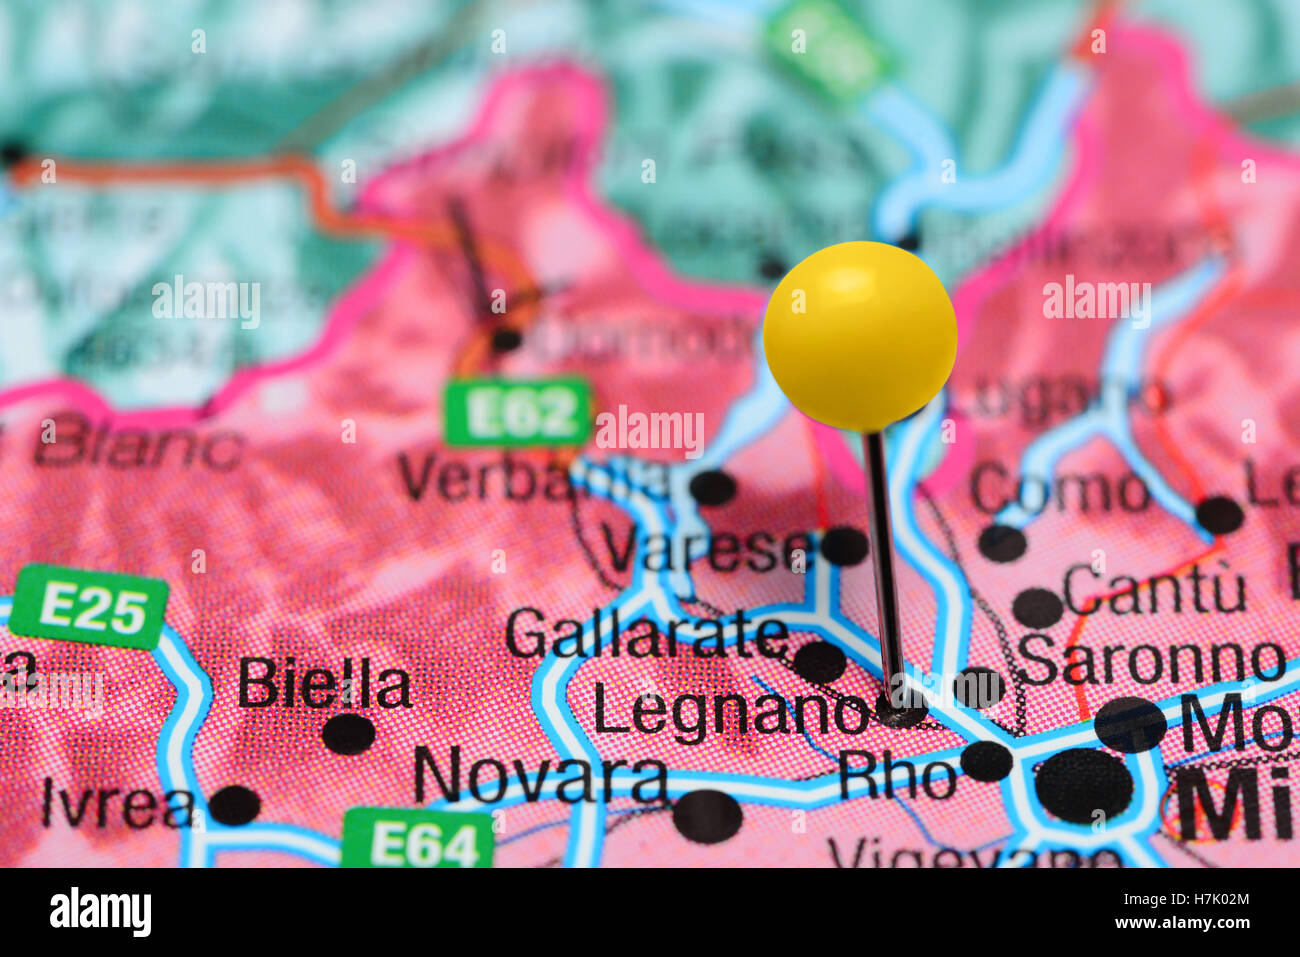 Legnano épinglée sur une carte de l'Italie Banque D'Images